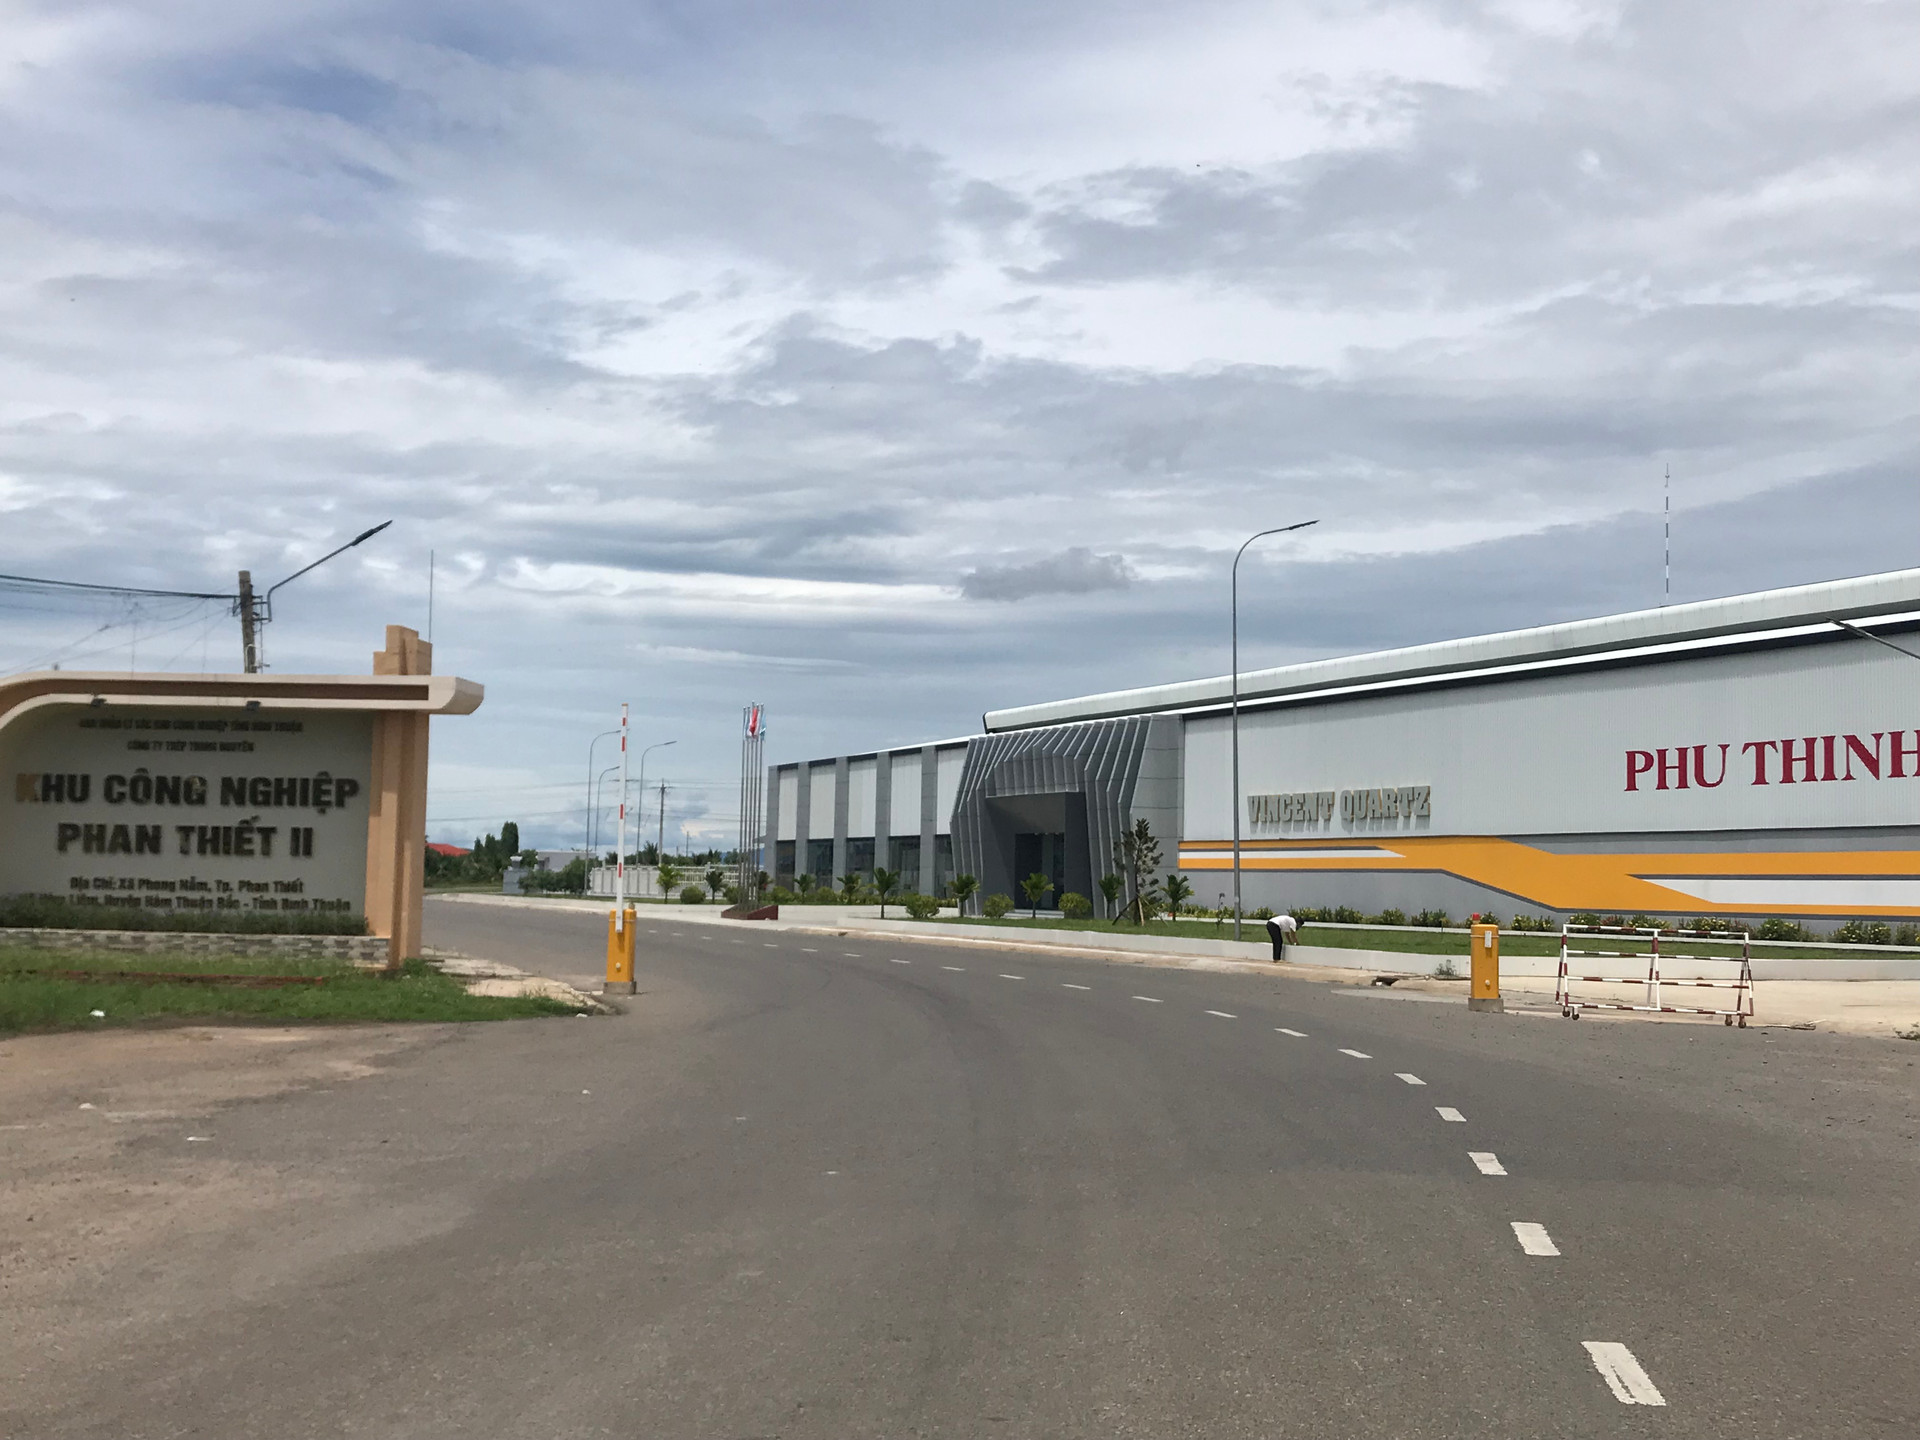 Khu công nghiệp Phan Thiết 2 – Bình Thuận  